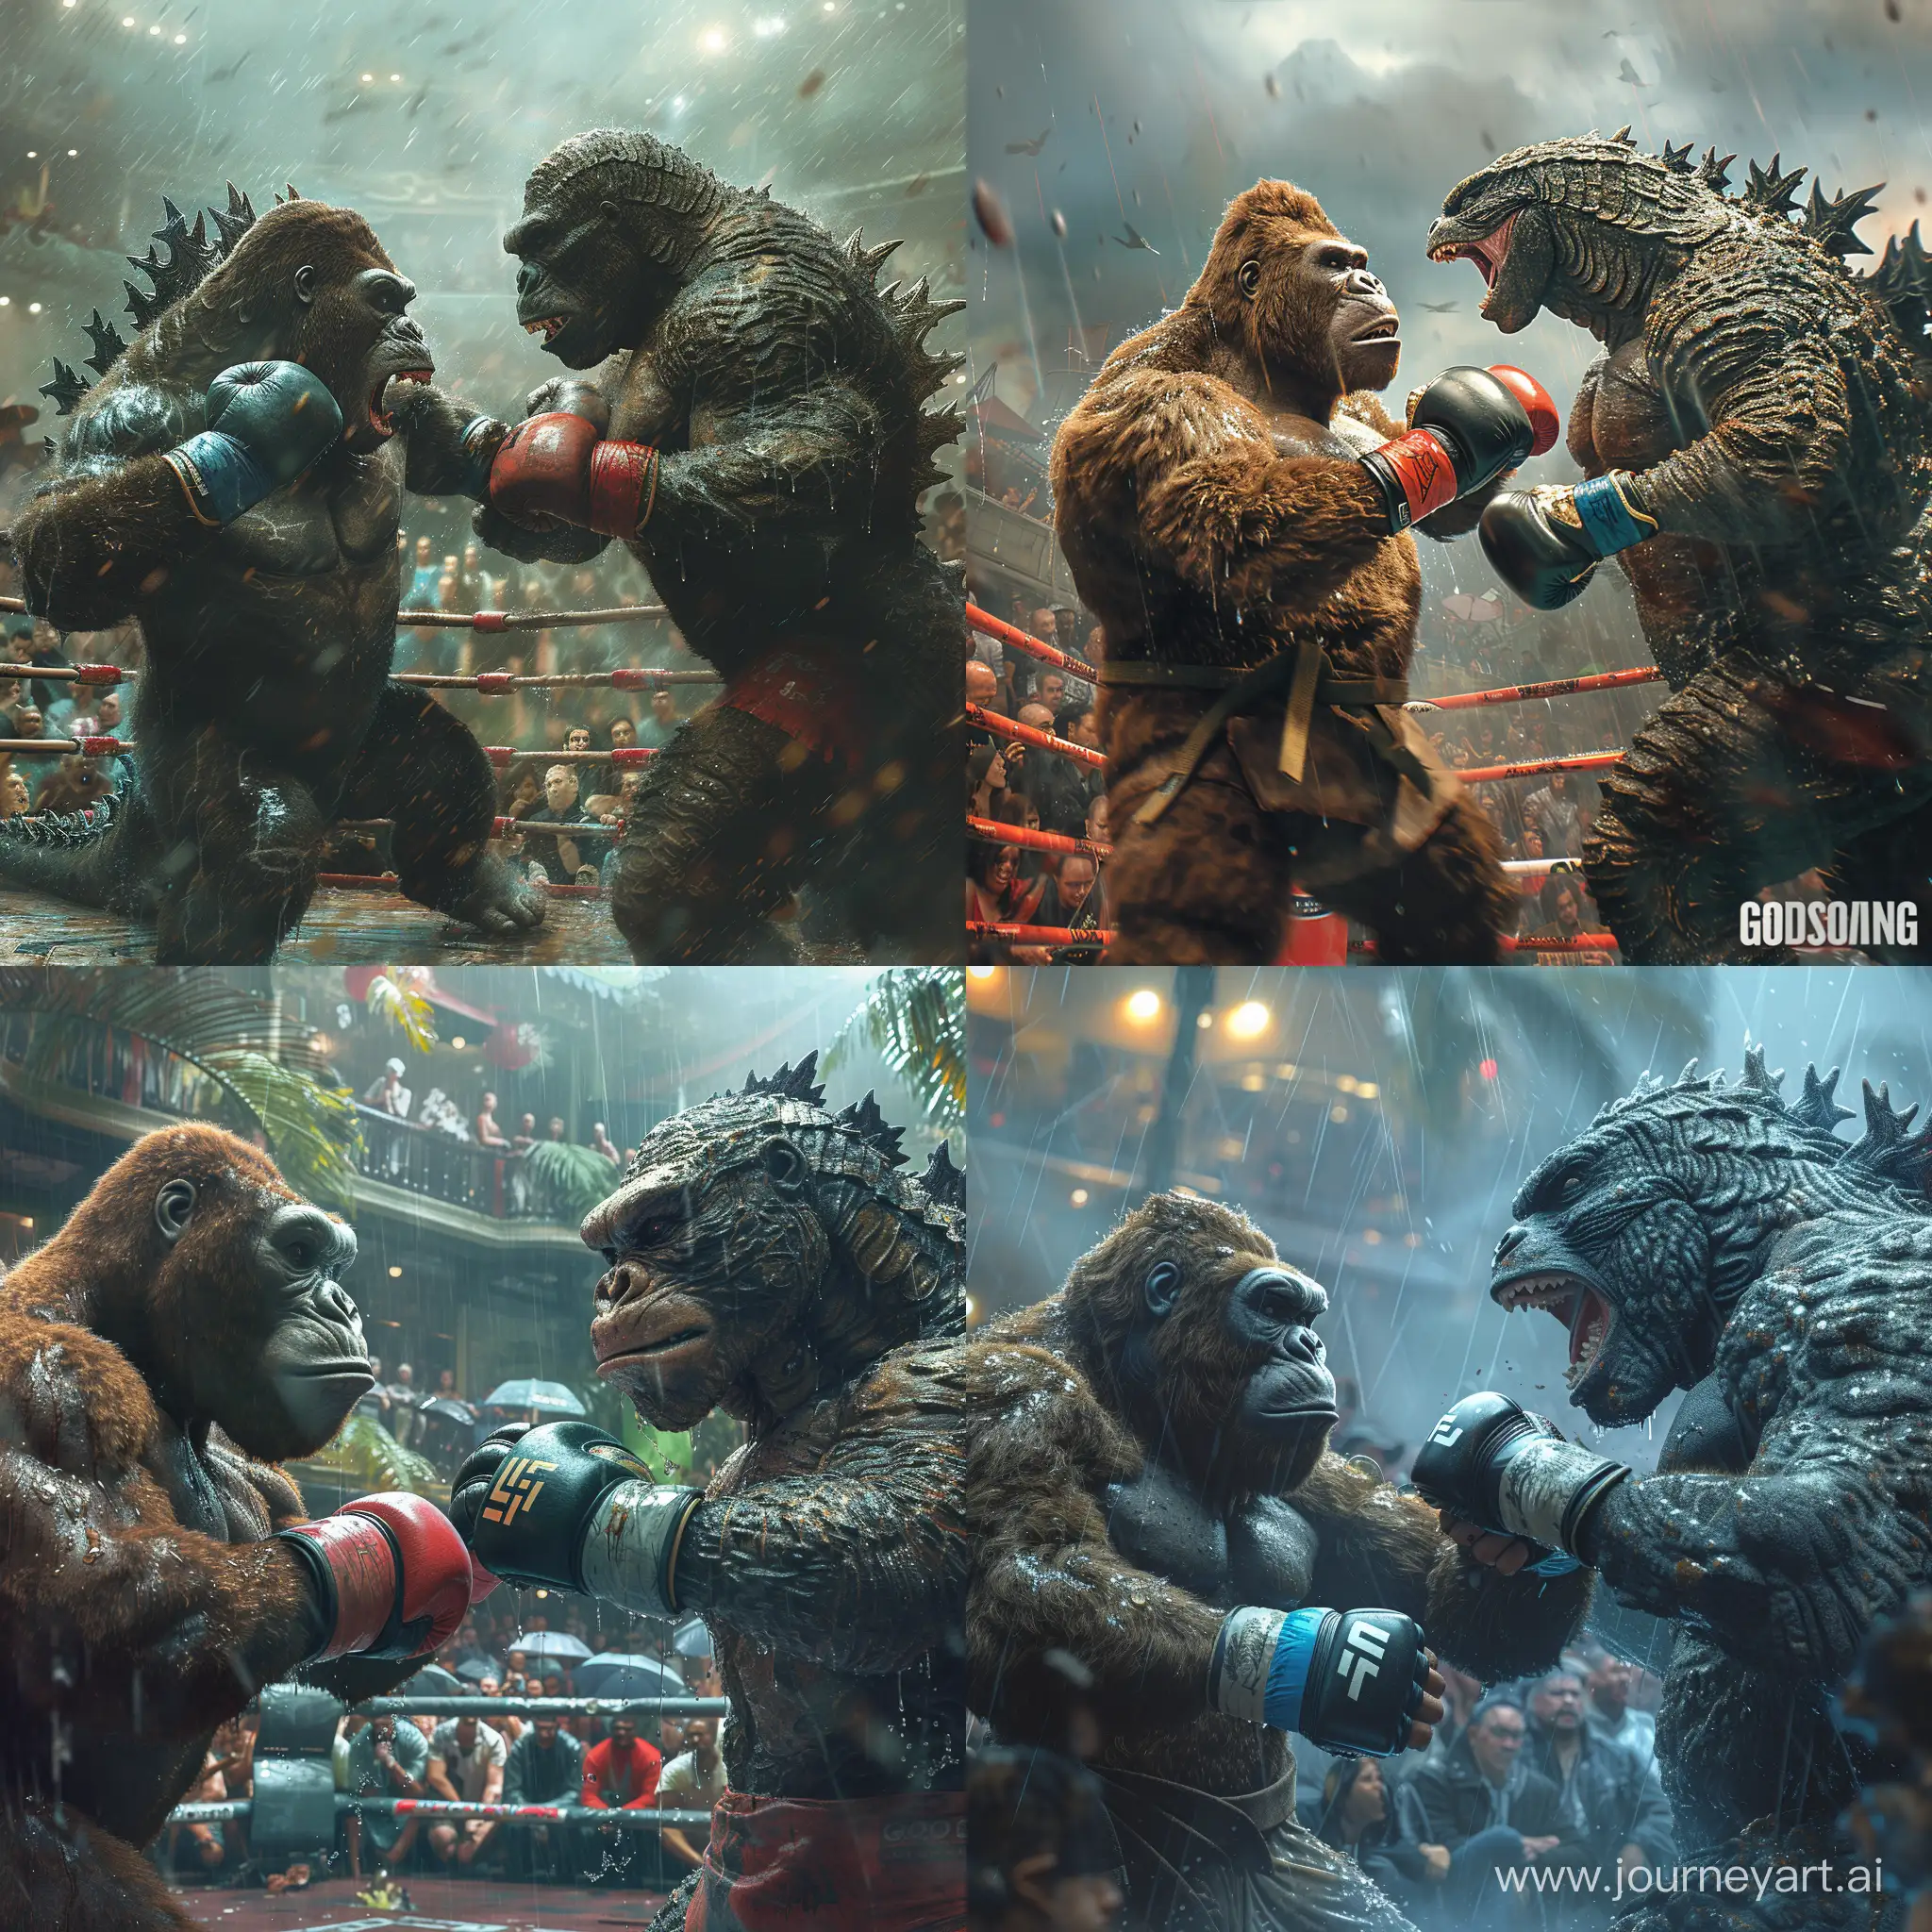 Epic-Battle-King-Kong-vs-Godzilla-in-Rainy-MMA-Match